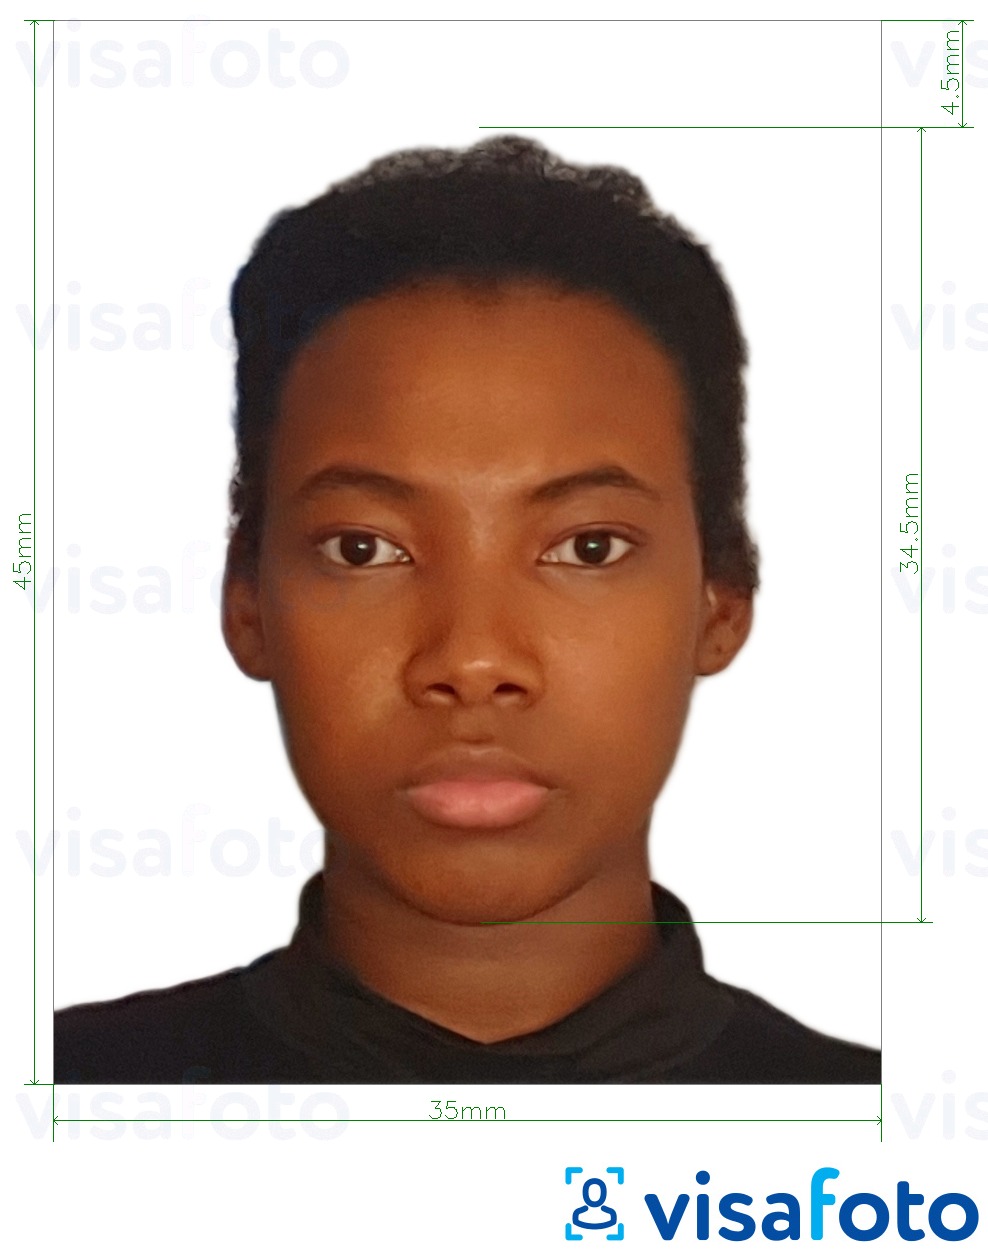 Nigerian passport photo